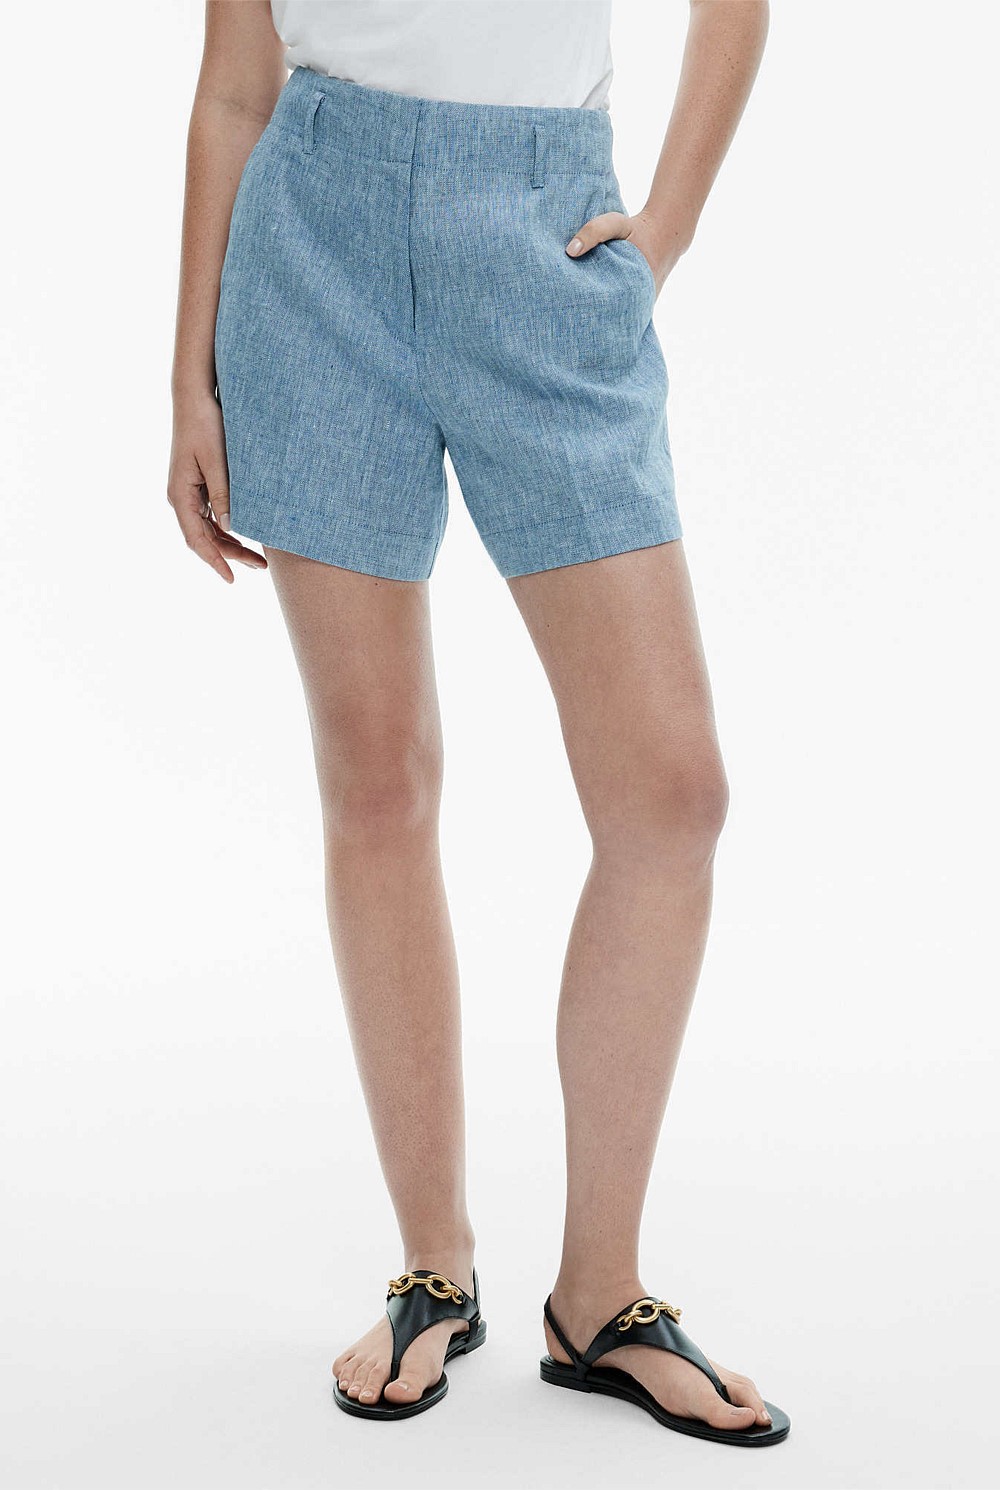 Buy Women's High Waisted Linen Shorts Online